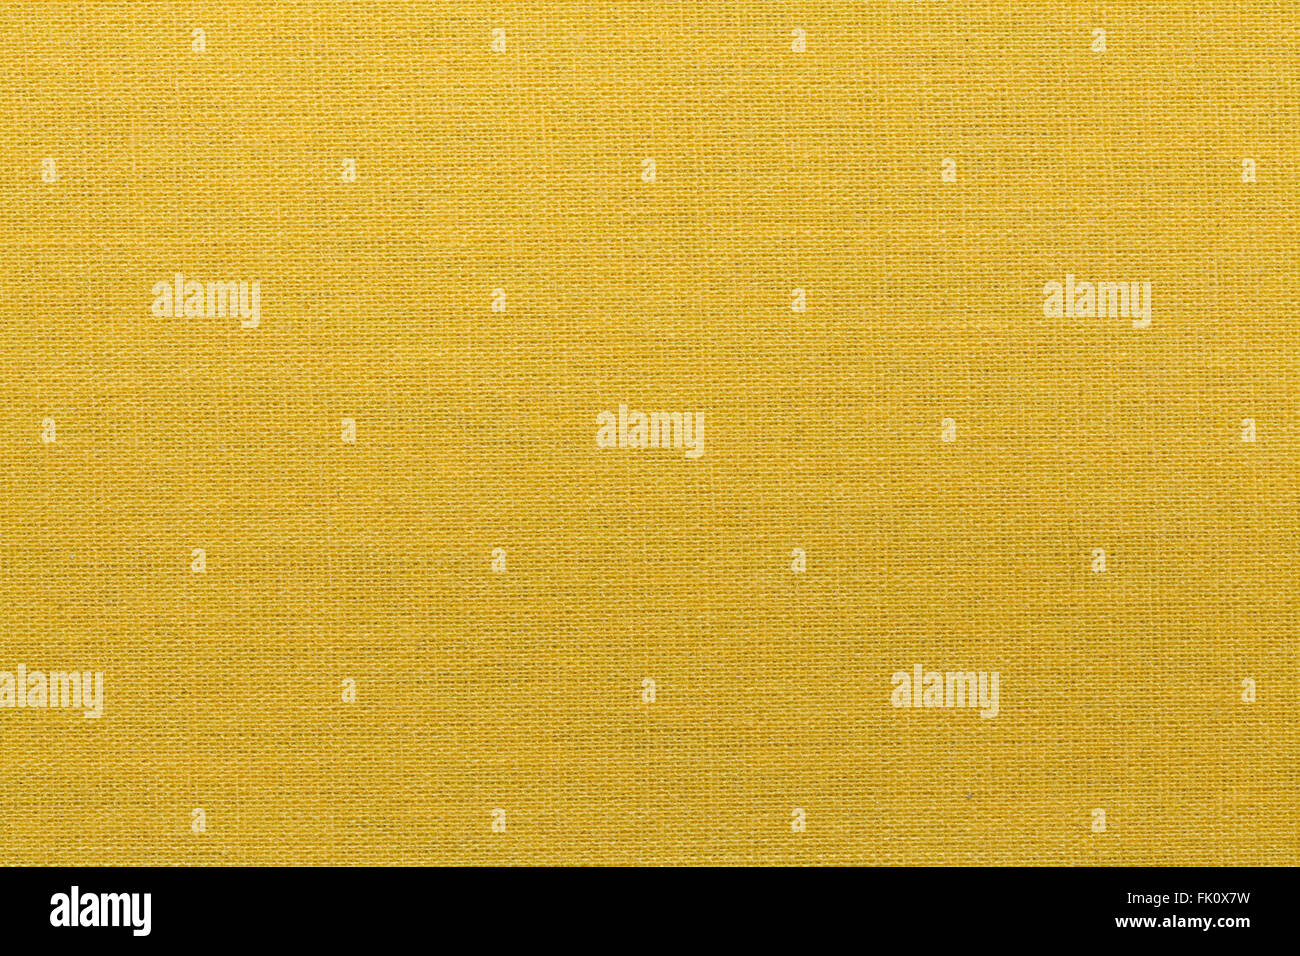 Yellow textile texture. Yellow background. Stock Photo